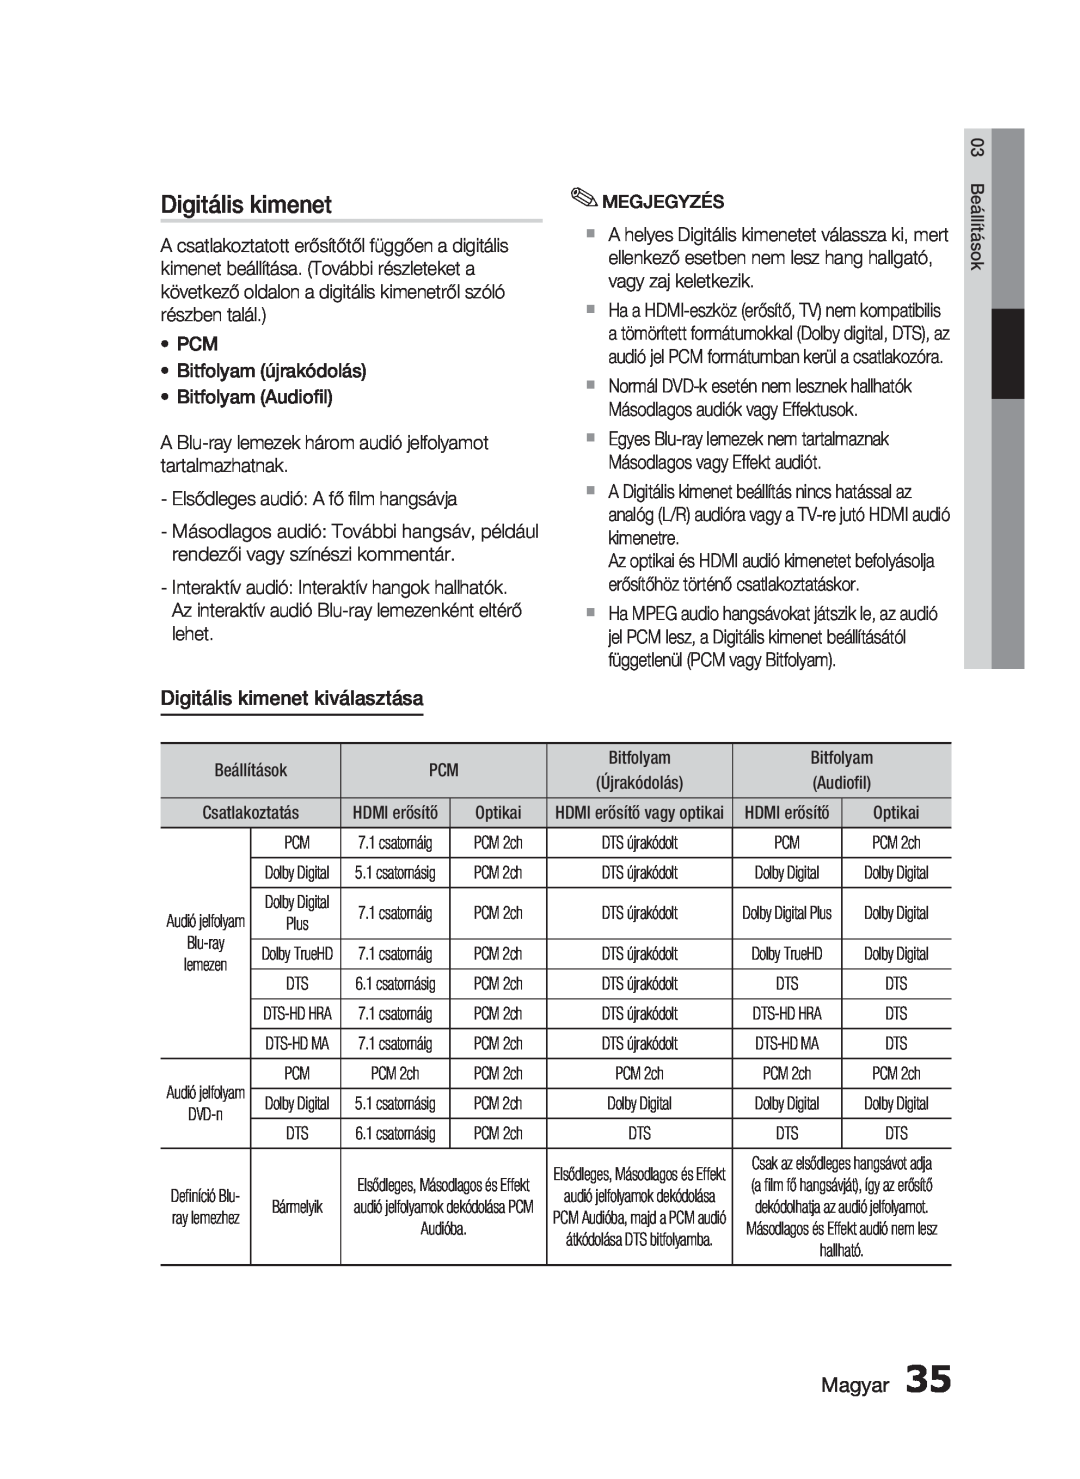 Samsung HT-C5900/XEE, HT-C5900/XEF manual Digitális kimenet kiválasztása, Magyar 